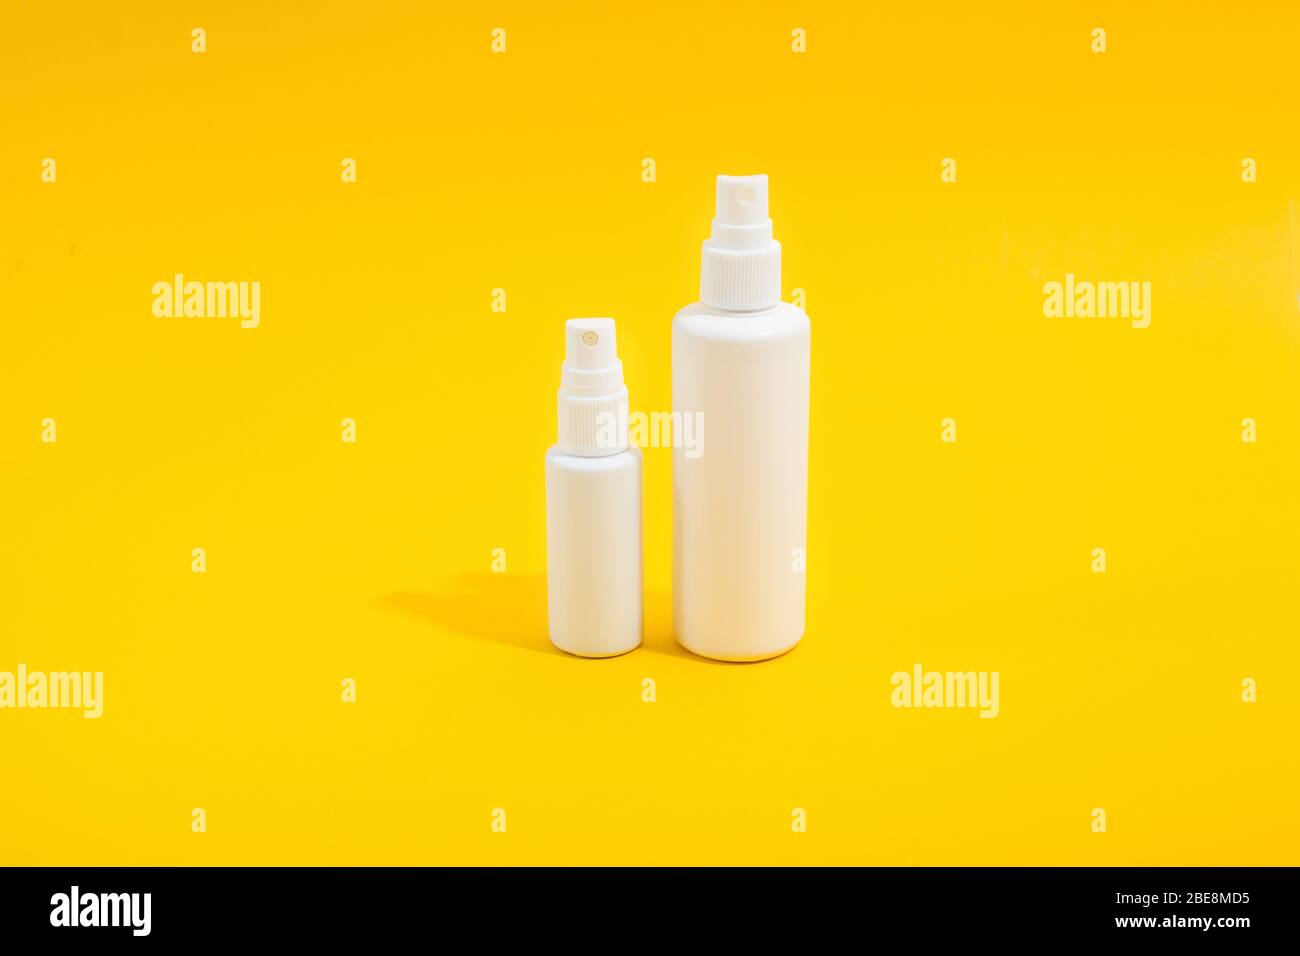 Deux bouteilles en plastique blanc avec vaporisation sur fond jaune. Solution désinfectante pour la maison et mini-version pour sac à main. Espace de copie. Maquette pour la conception Banque D'Images